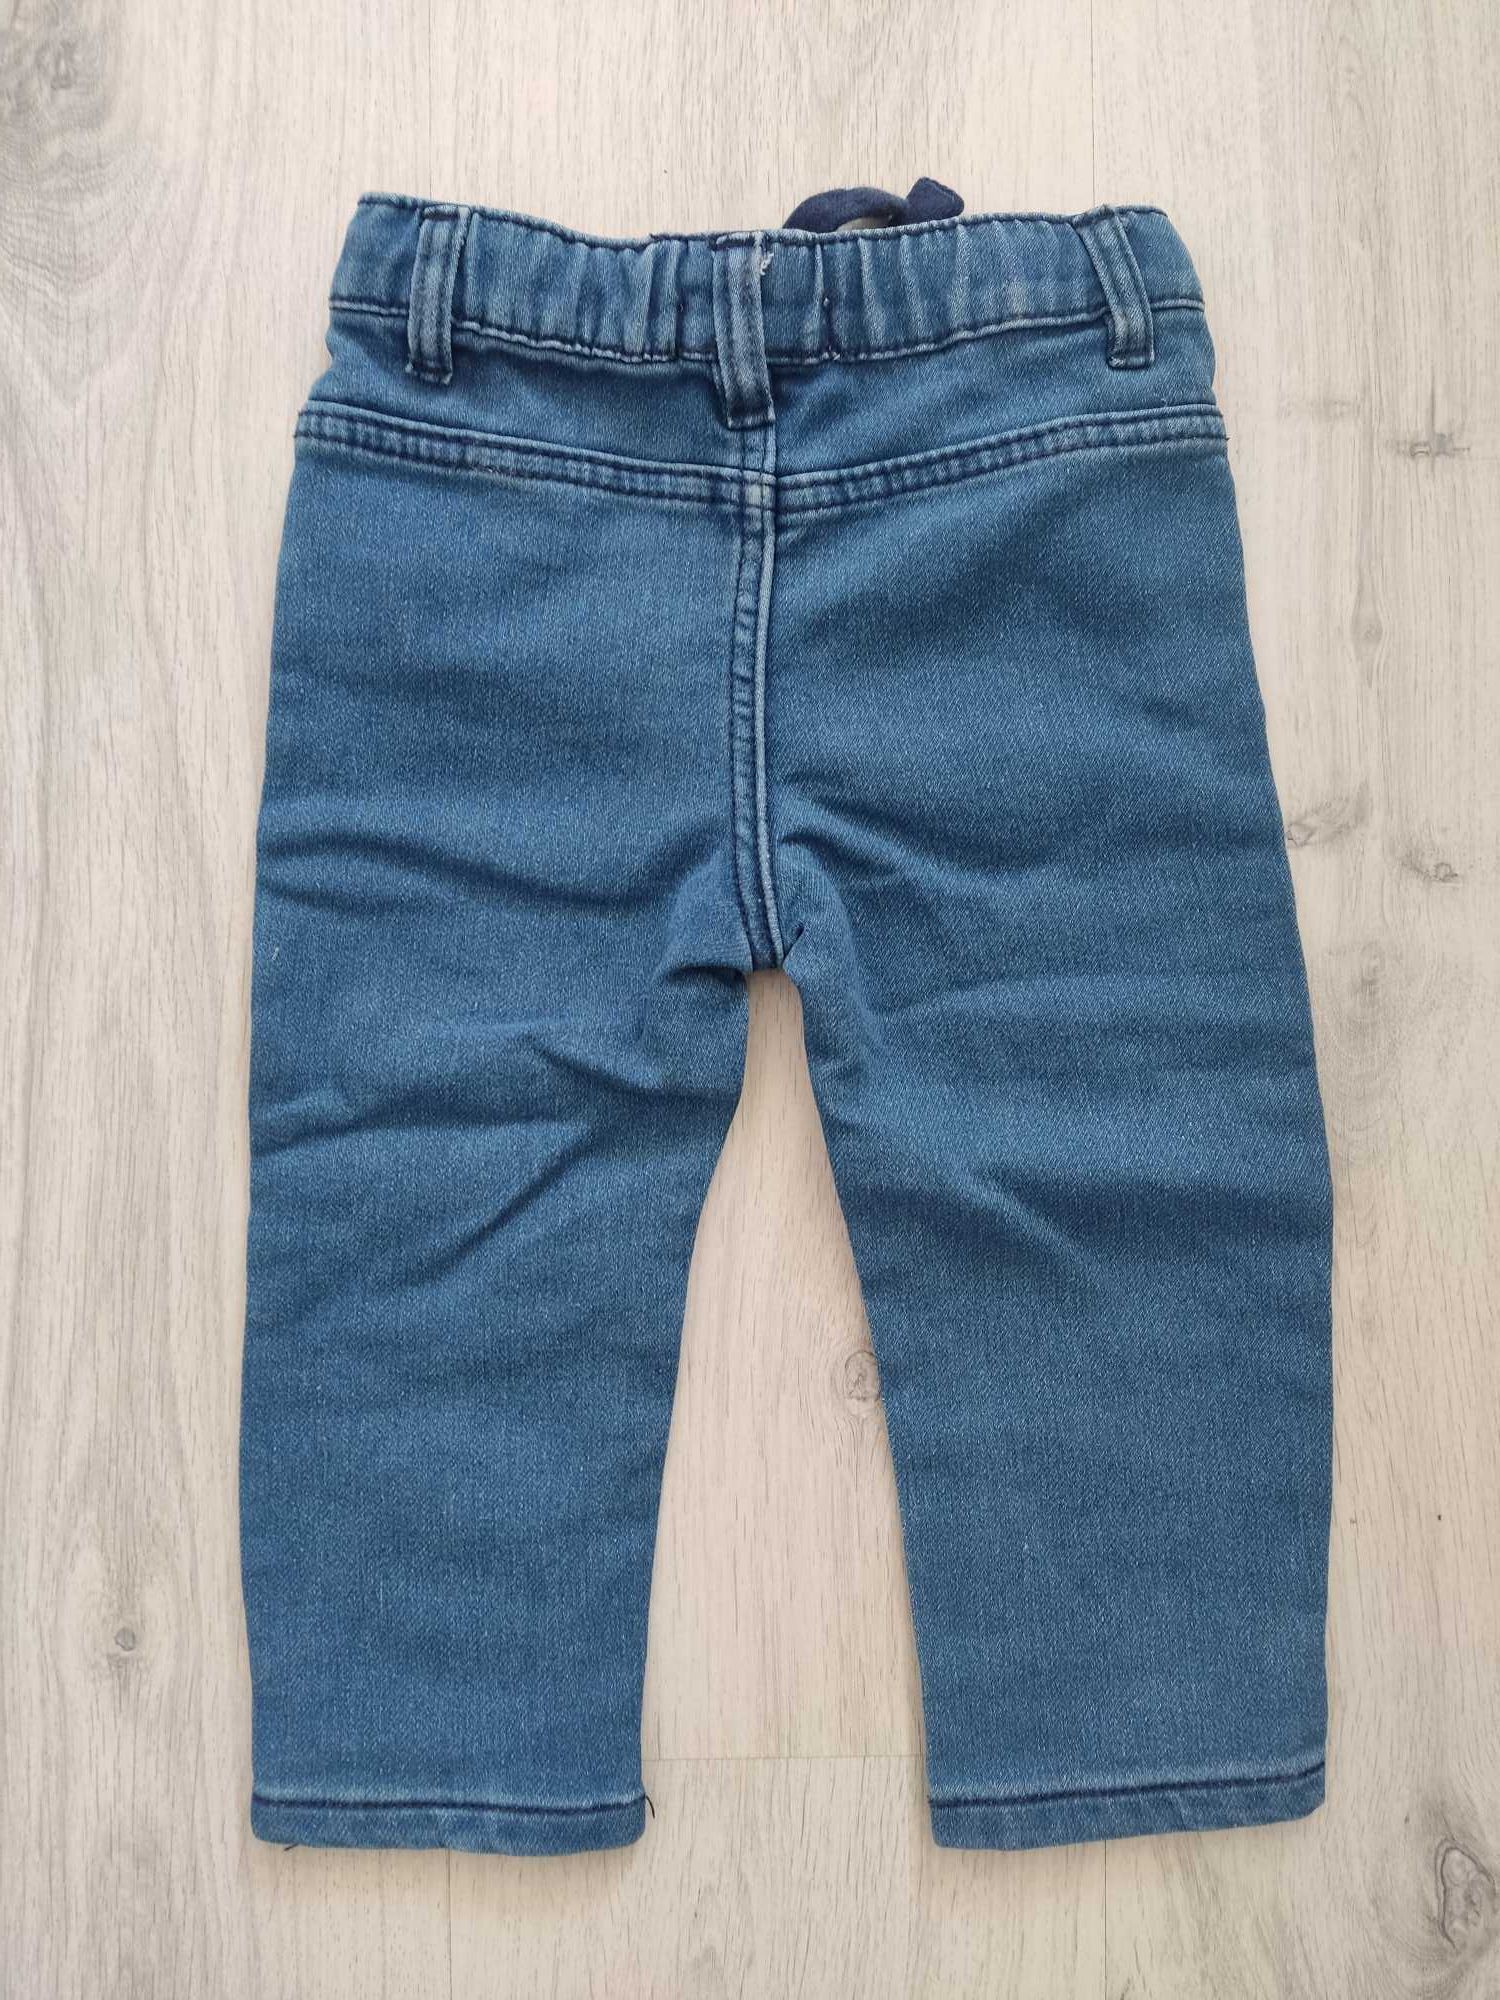 Spodnie jeansowe, Sinsay, r.86.